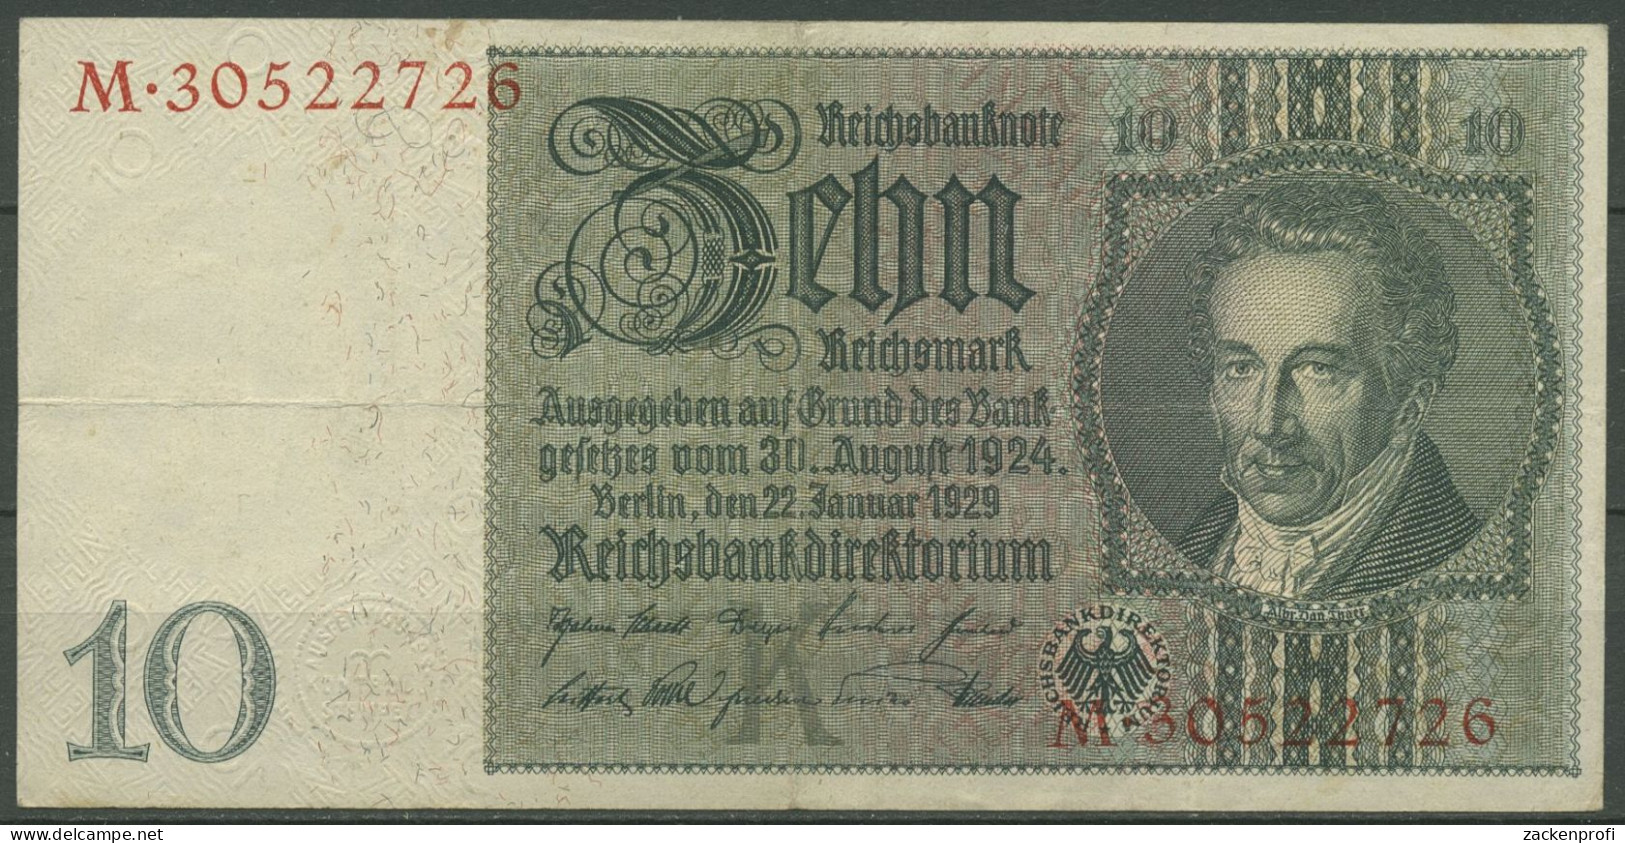 Dt. Reich 10 Reichsmark 1929, DEU-183b Serie K/M, Gebraucht (K1494) - 10 Mark